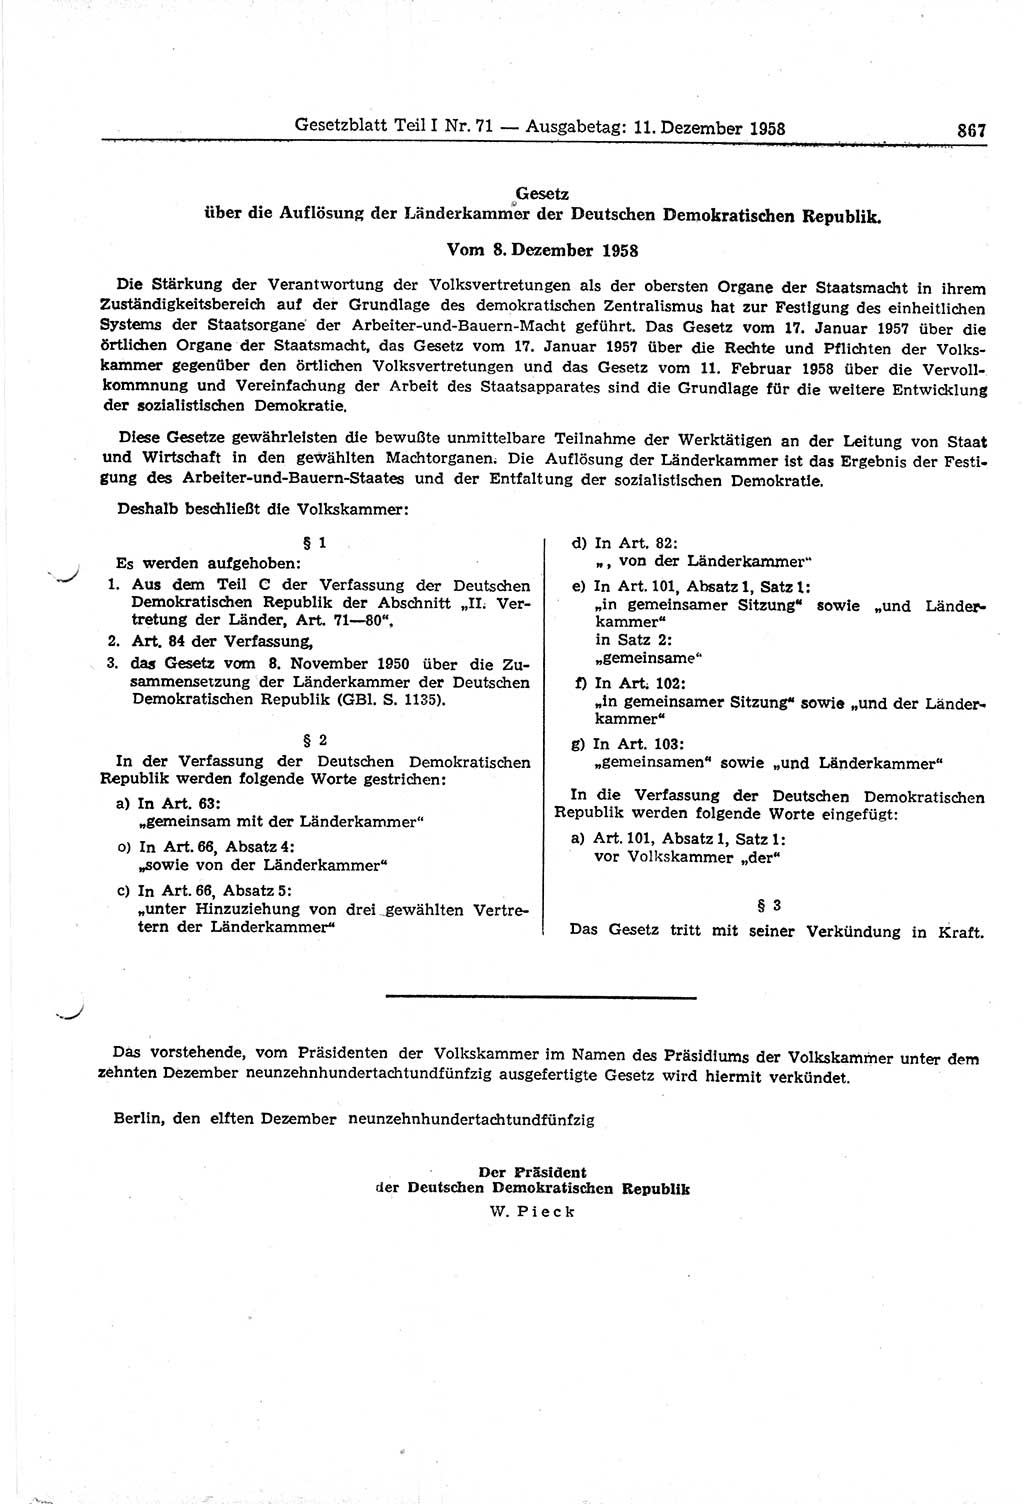 Gesetzblatt (GBl.) der Deutschen Demokratischen Republik (DDR) Teil Ⅰ 1958, Seite 867 (GBl. DDR Ⅰ 1958, S. 867)